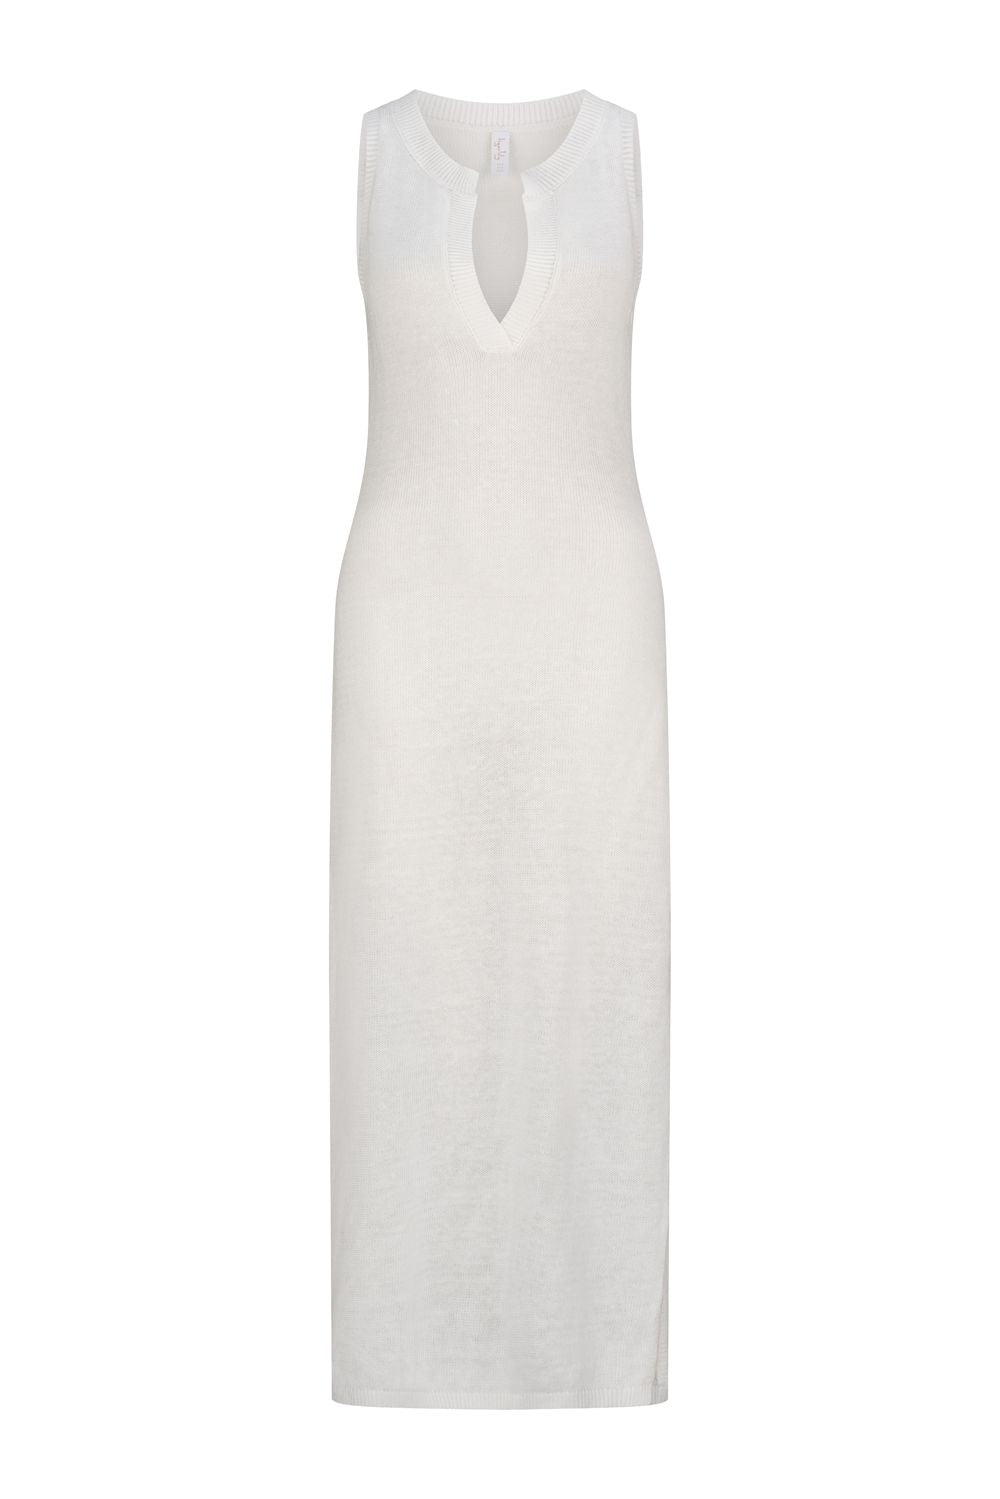 Marella Candace Sleeveless Midi Dress - White – Tigerlily USA